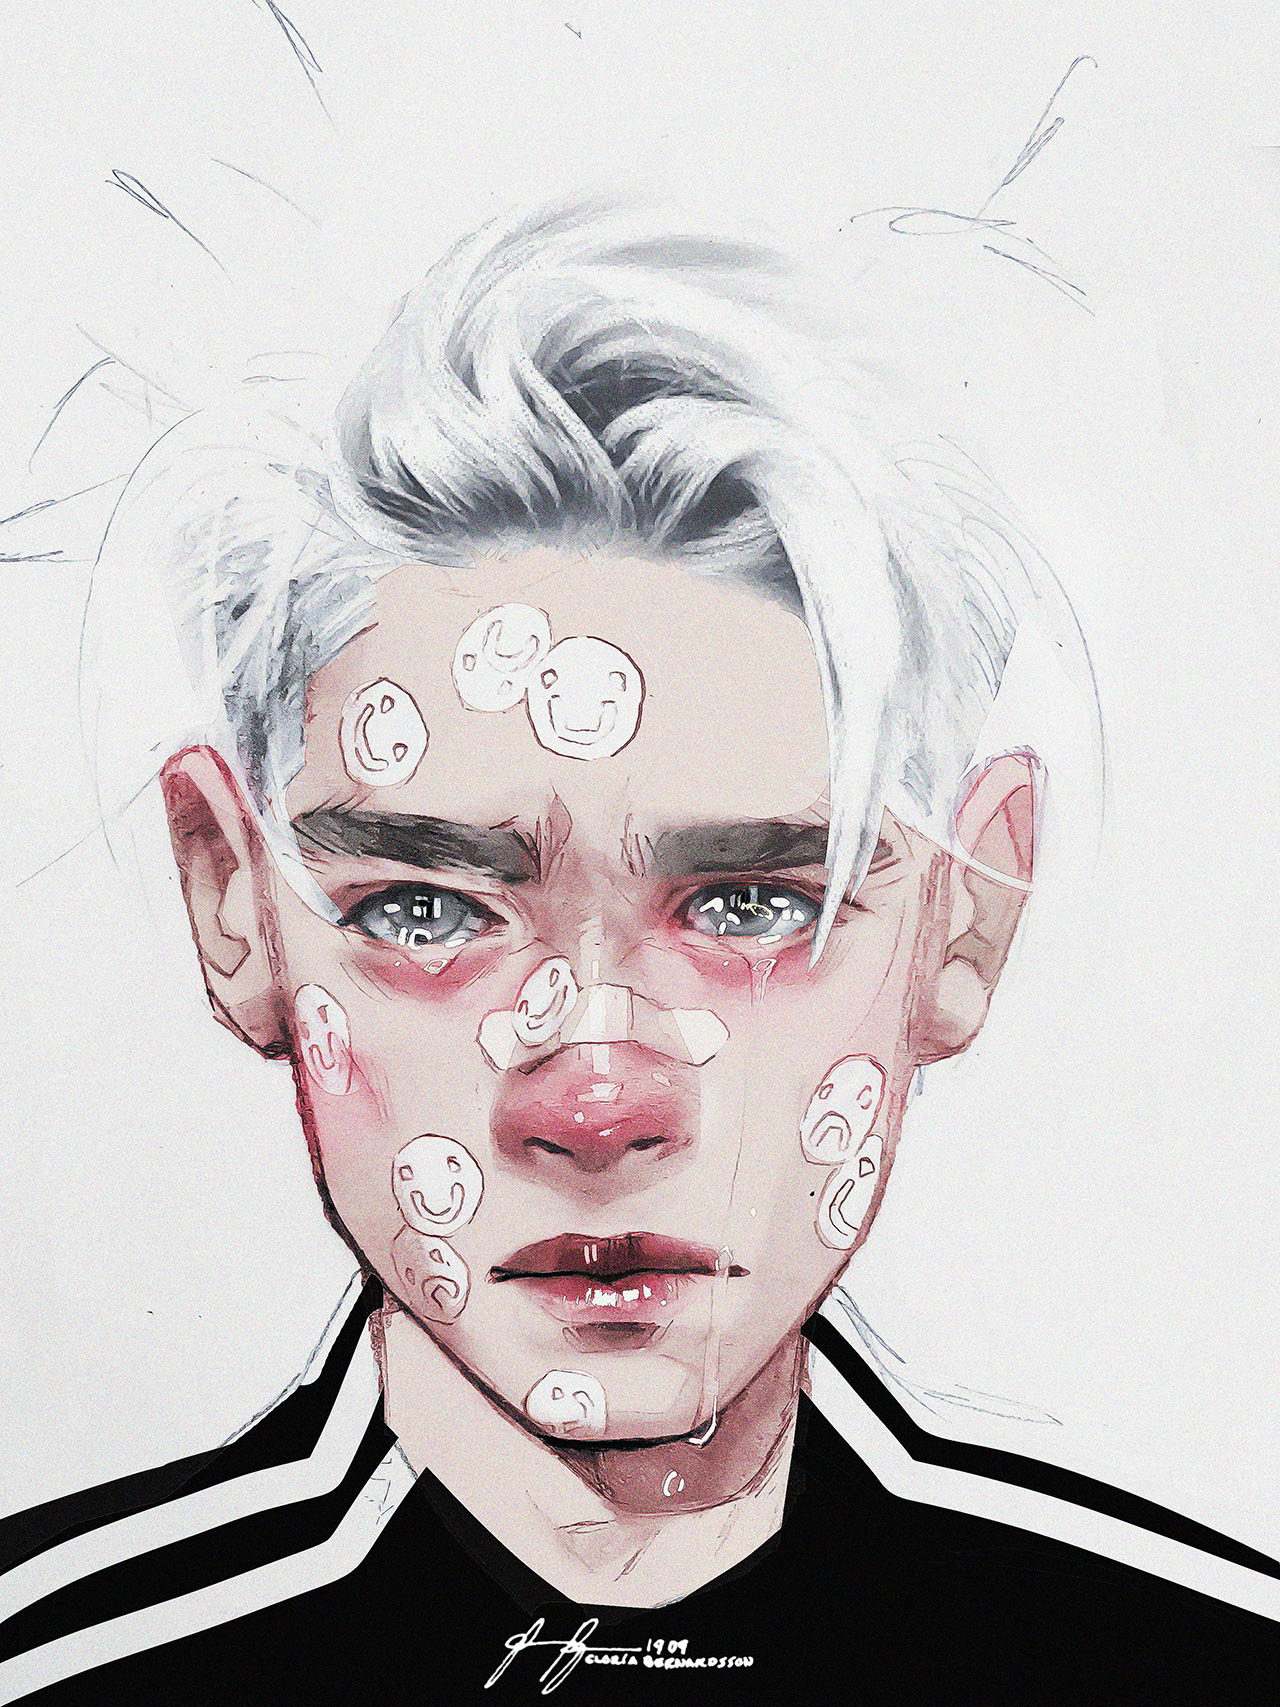 Illustration of crying boy with stickers on face Illustration av gråtande pojke med klistermärken i ansiktet